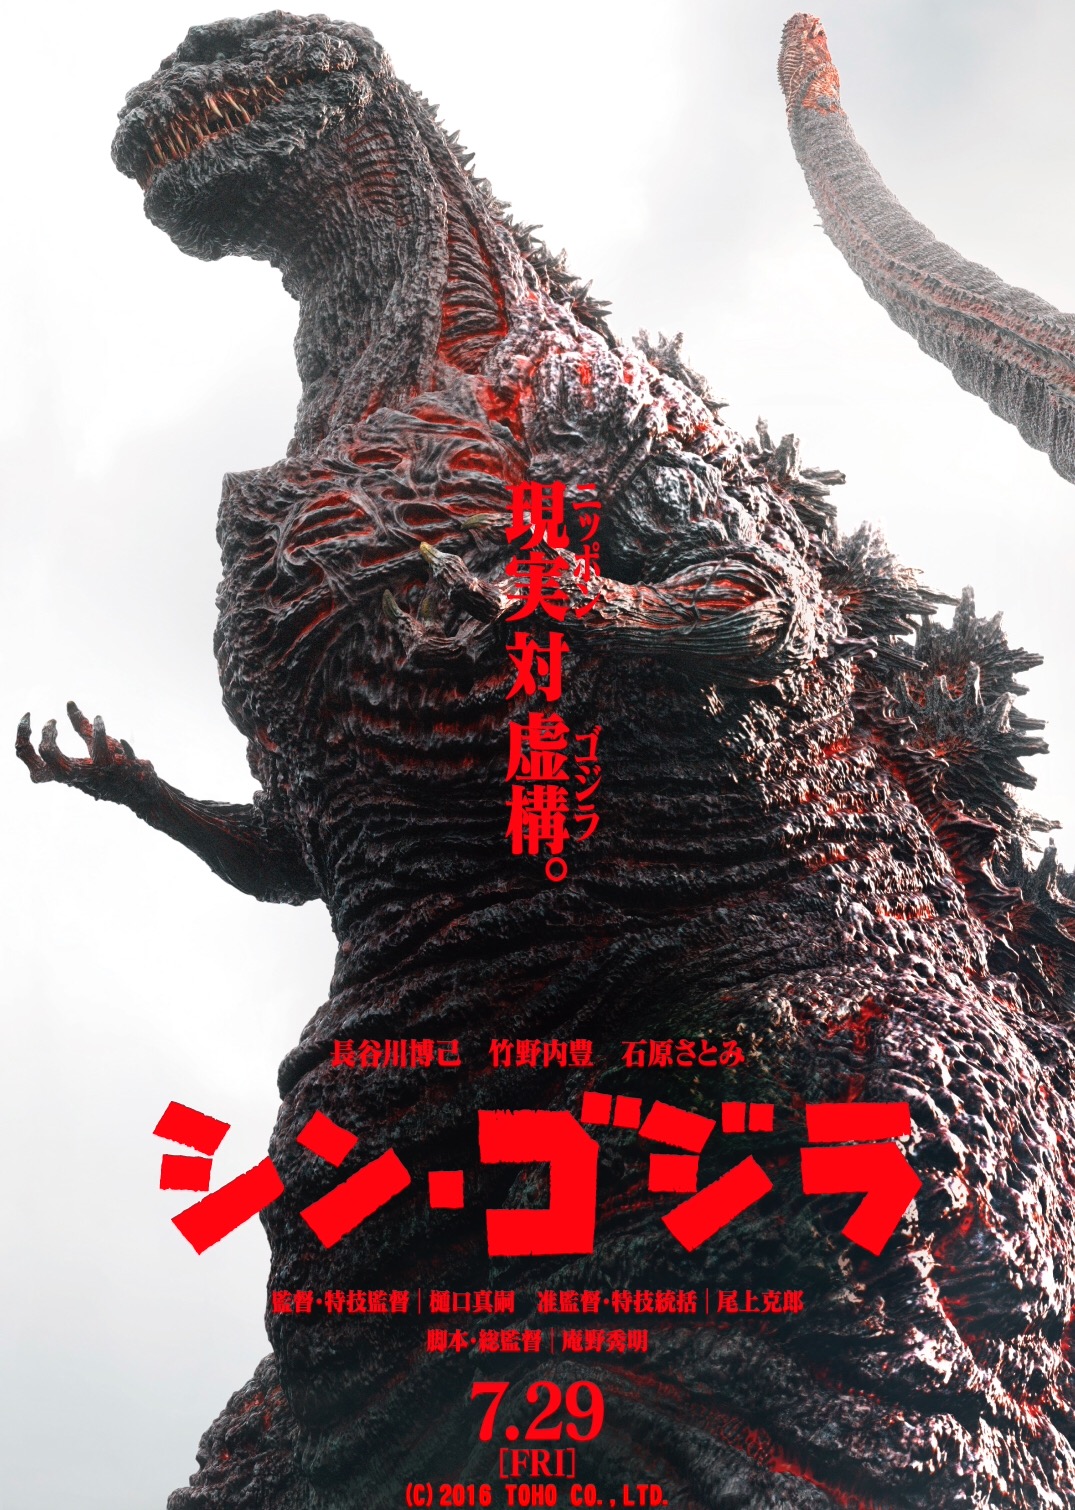 ดูหนังออนไลน์ Shin Godzilla 2016 เว็บดูหนังใหม่ออนไลน์ฟรี